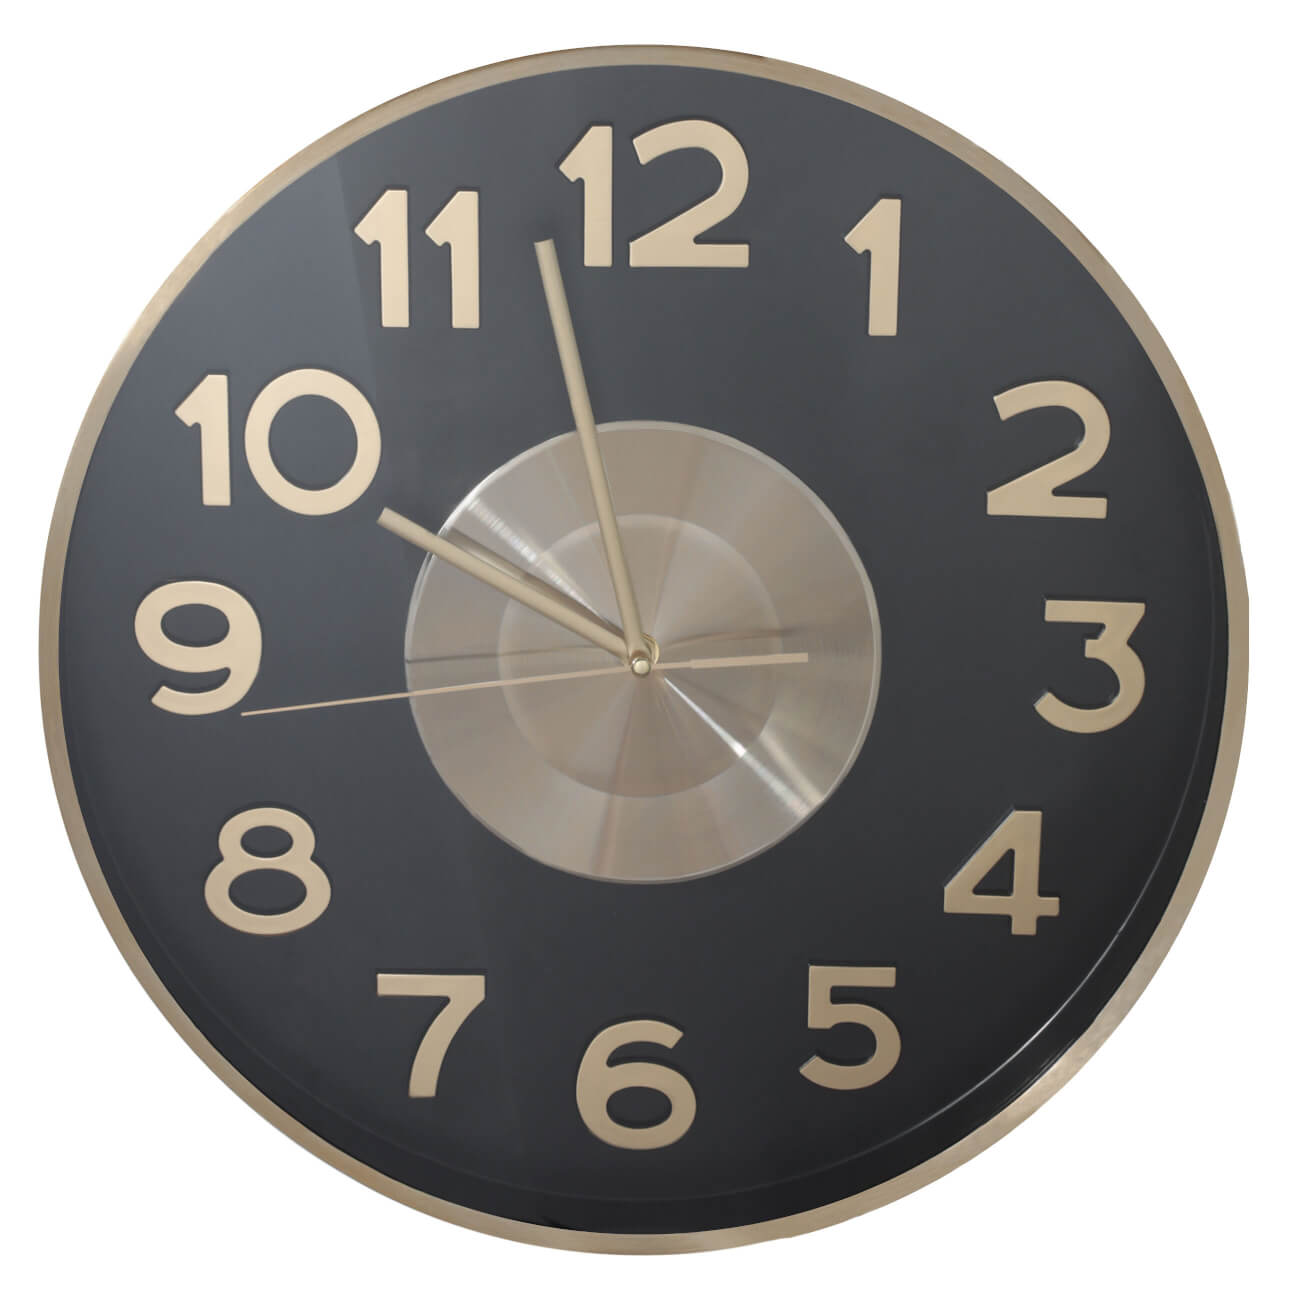 Часы настенные, 40 см, металл/стекло, круглые, черно-золотистые, Диск, Dial часы электронные настенные с будильником 33 7 х 11 4 х 4 5 см красные цифры